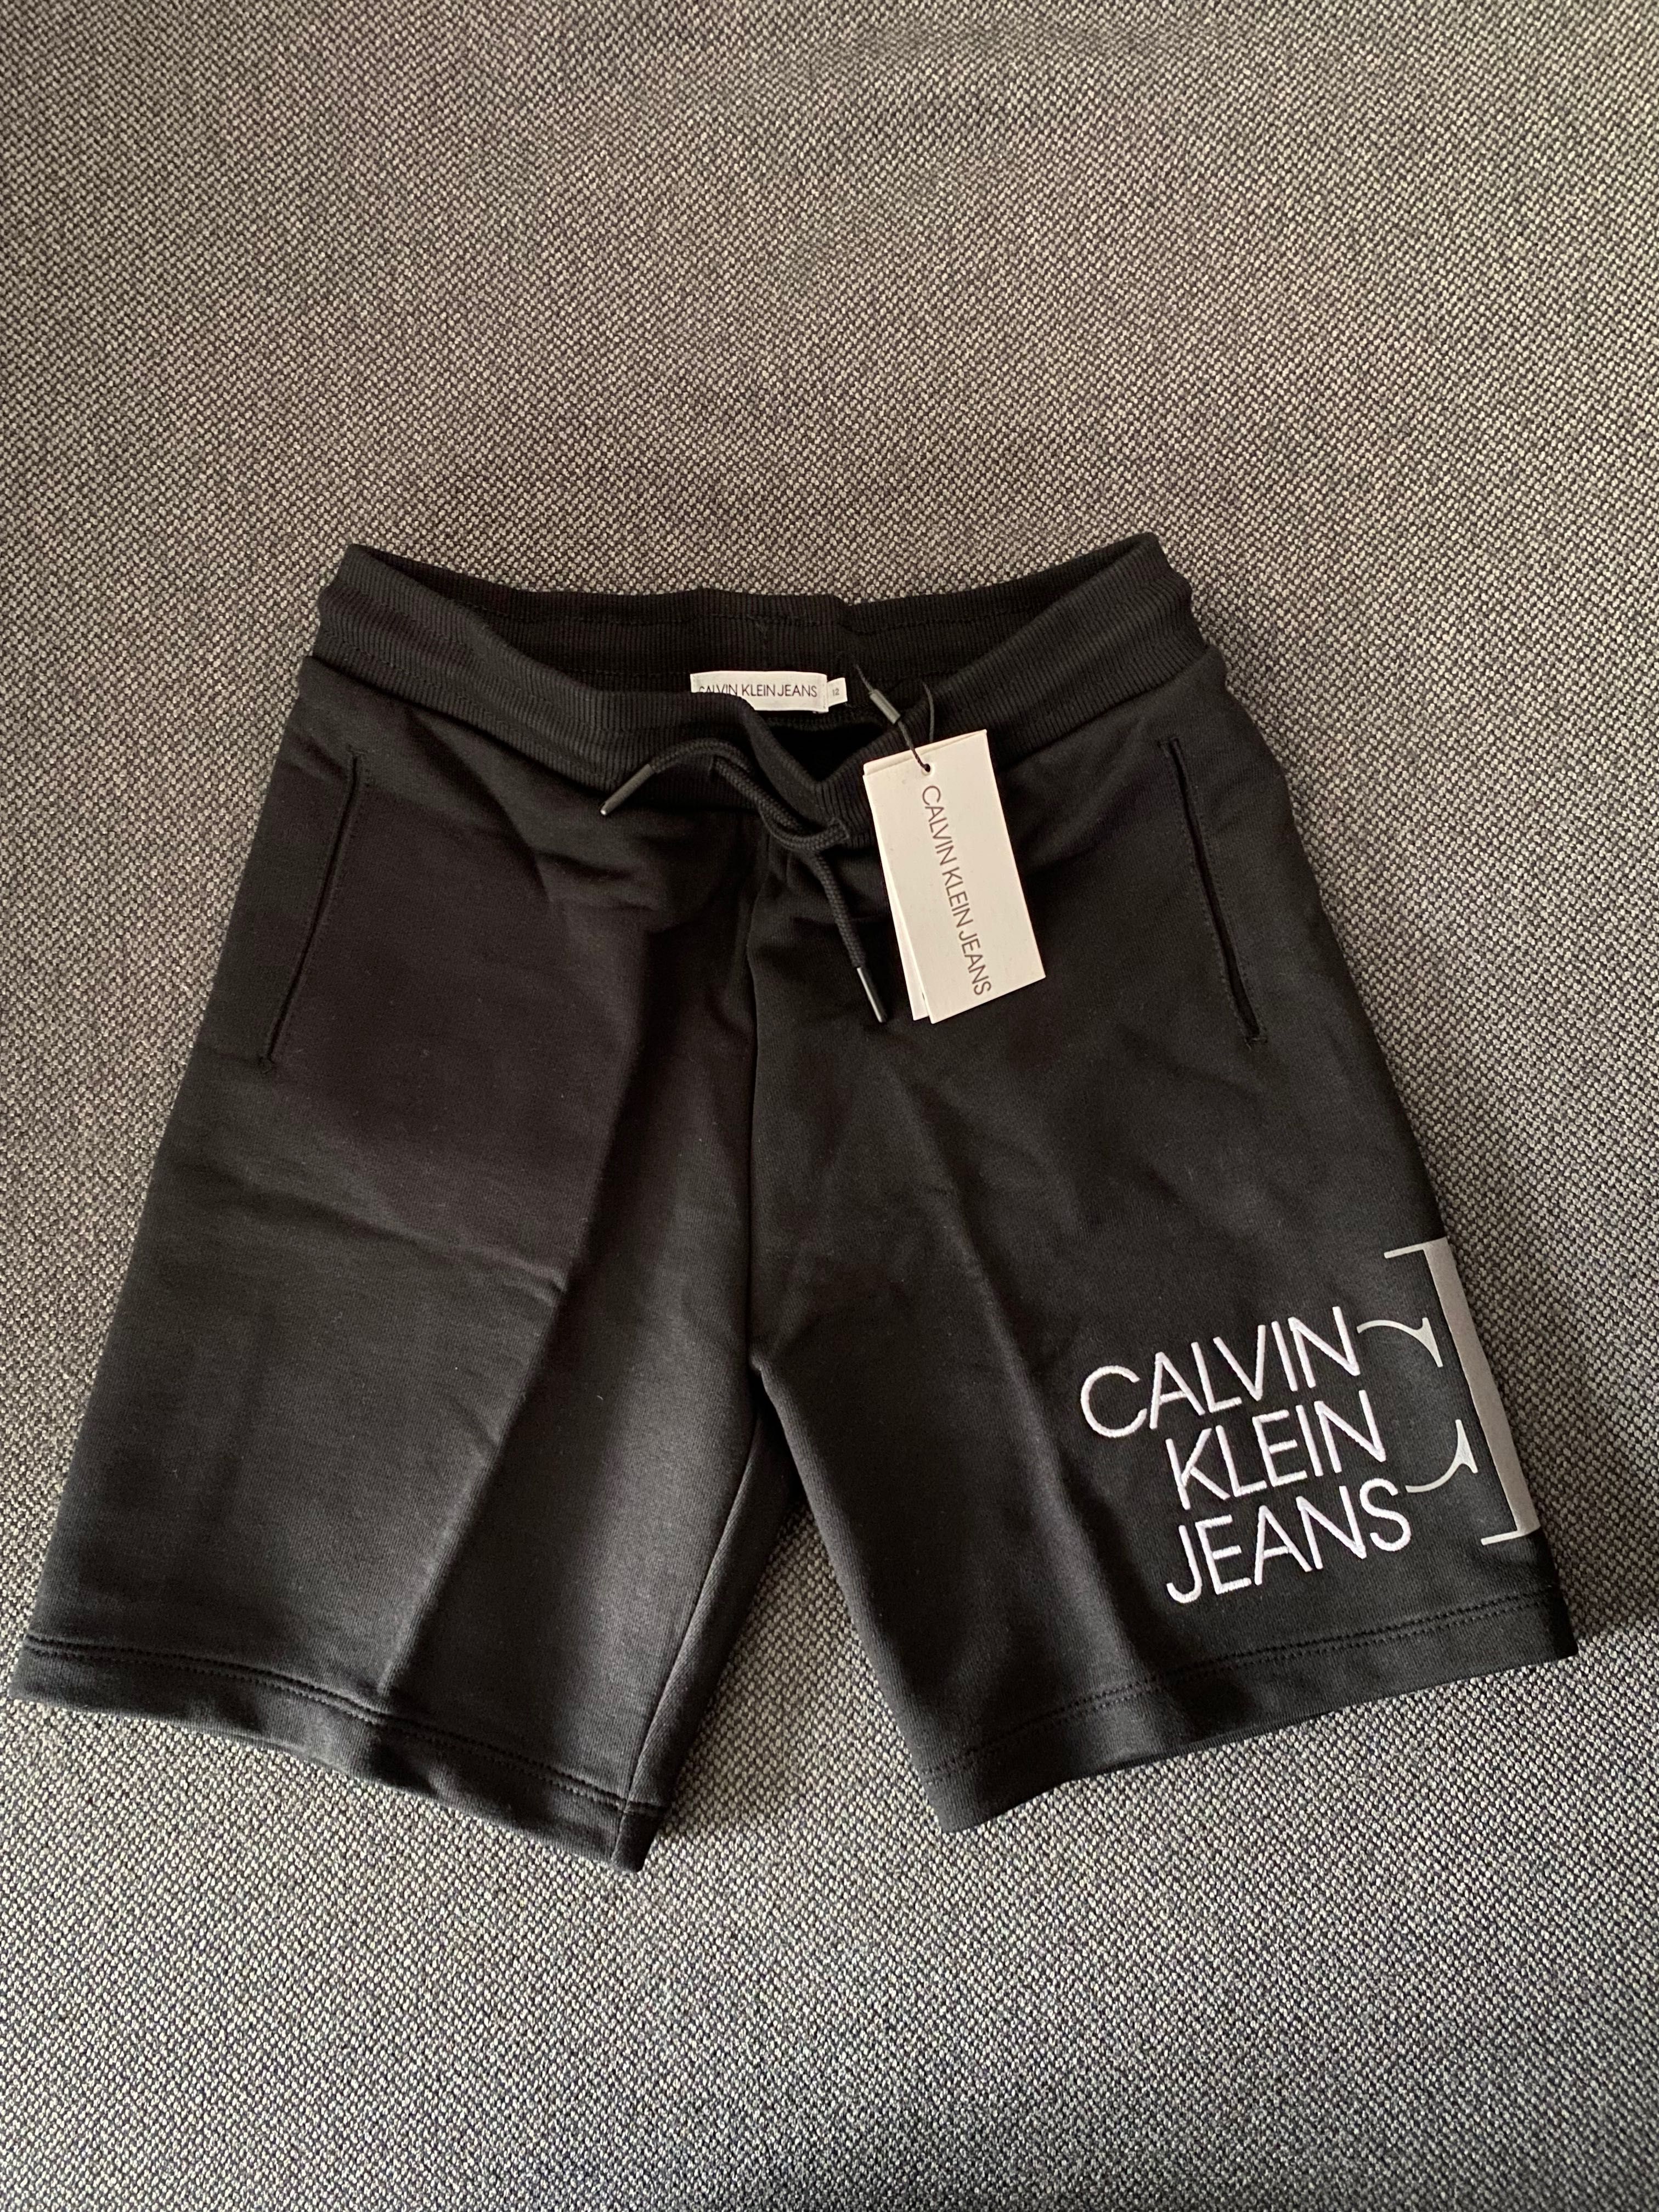 НОВИ Оригинални детски дрехи Calvin Klein за момче, размер 12г.